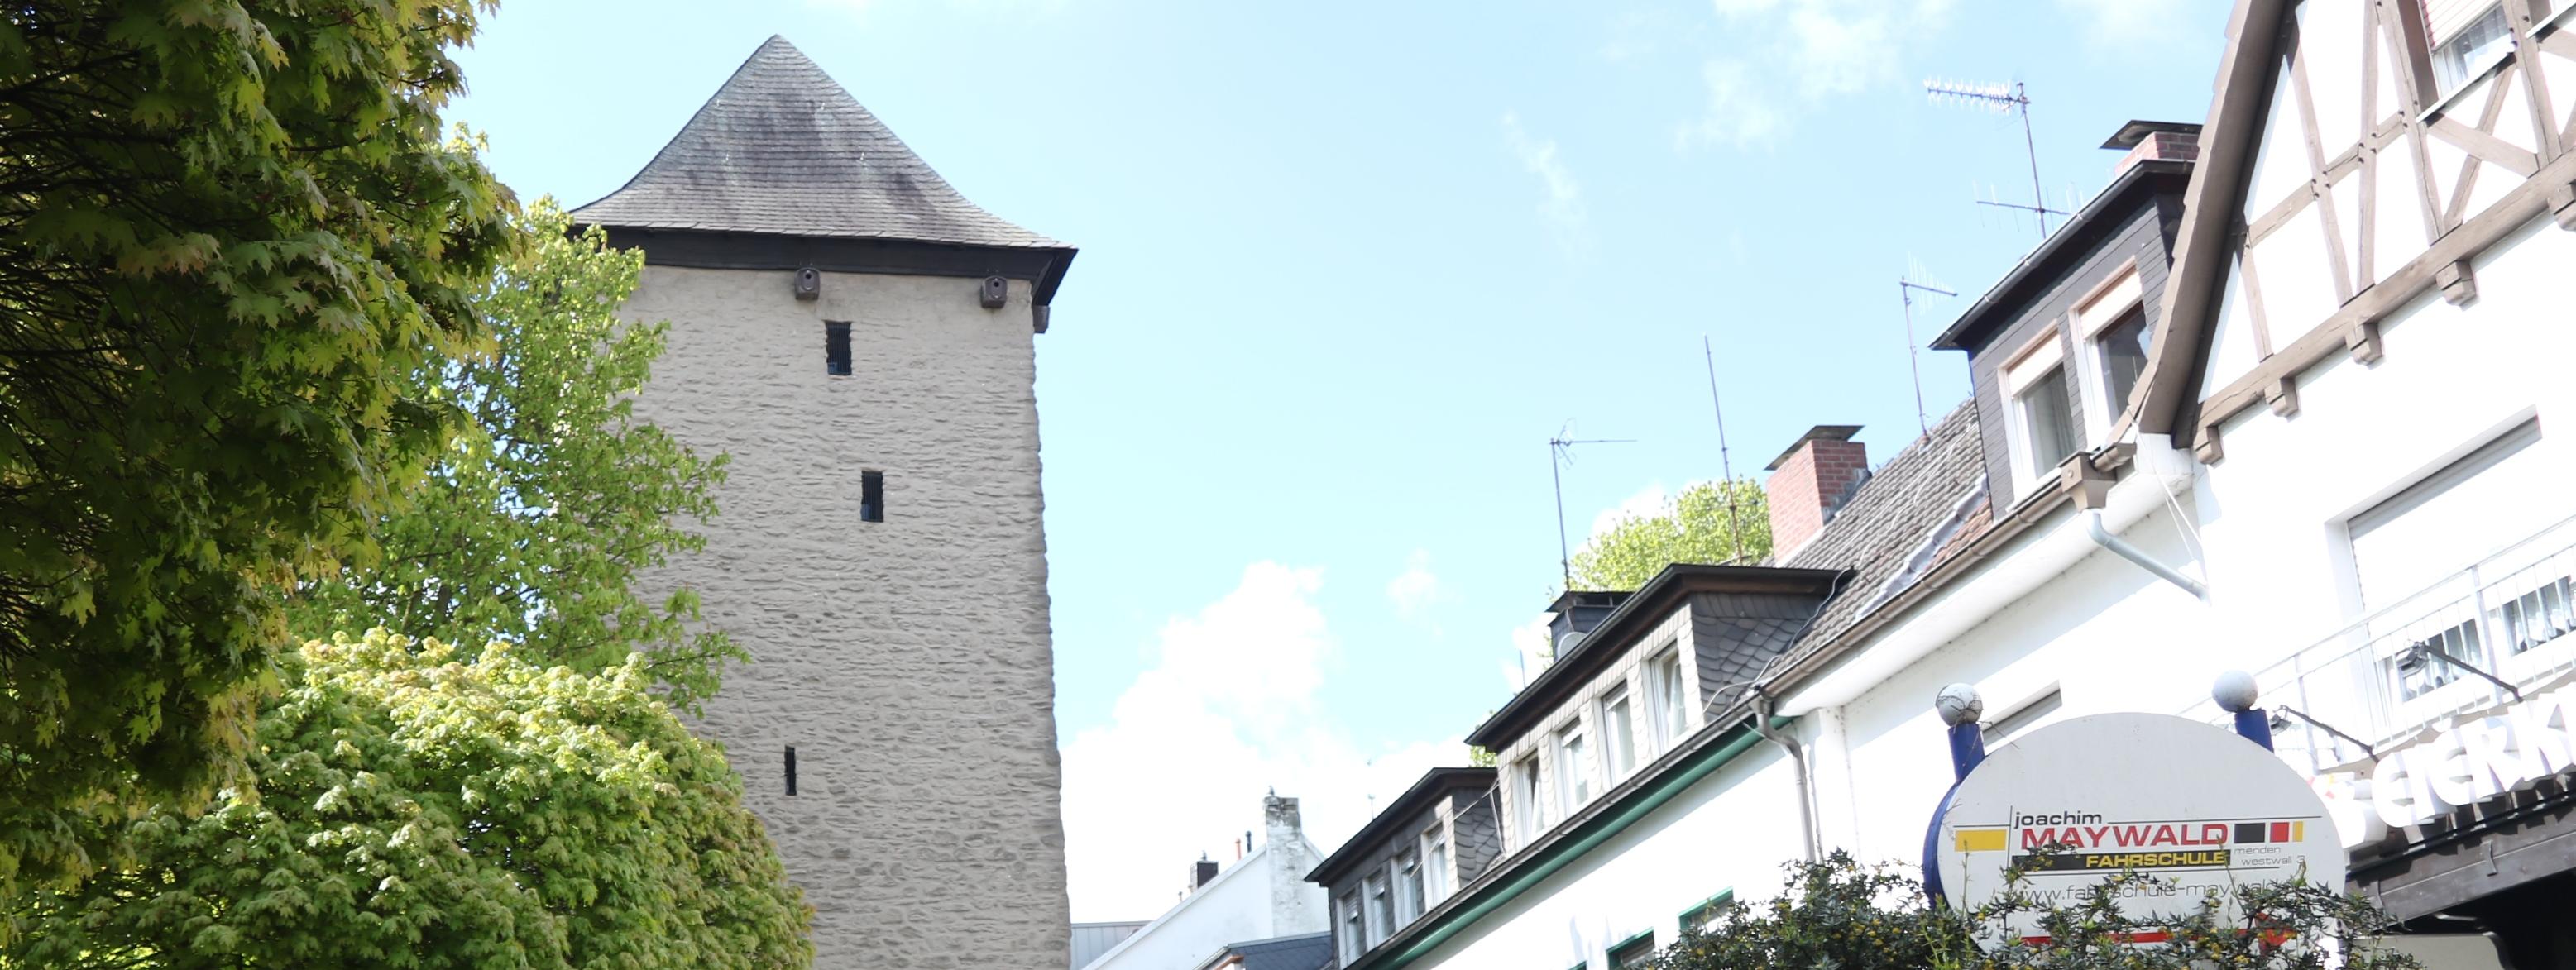 Der Poennigeturm, umringt von Bäumen auf der linken Seite und der Häuserfront der Turmstraße auf der rechten Seite.